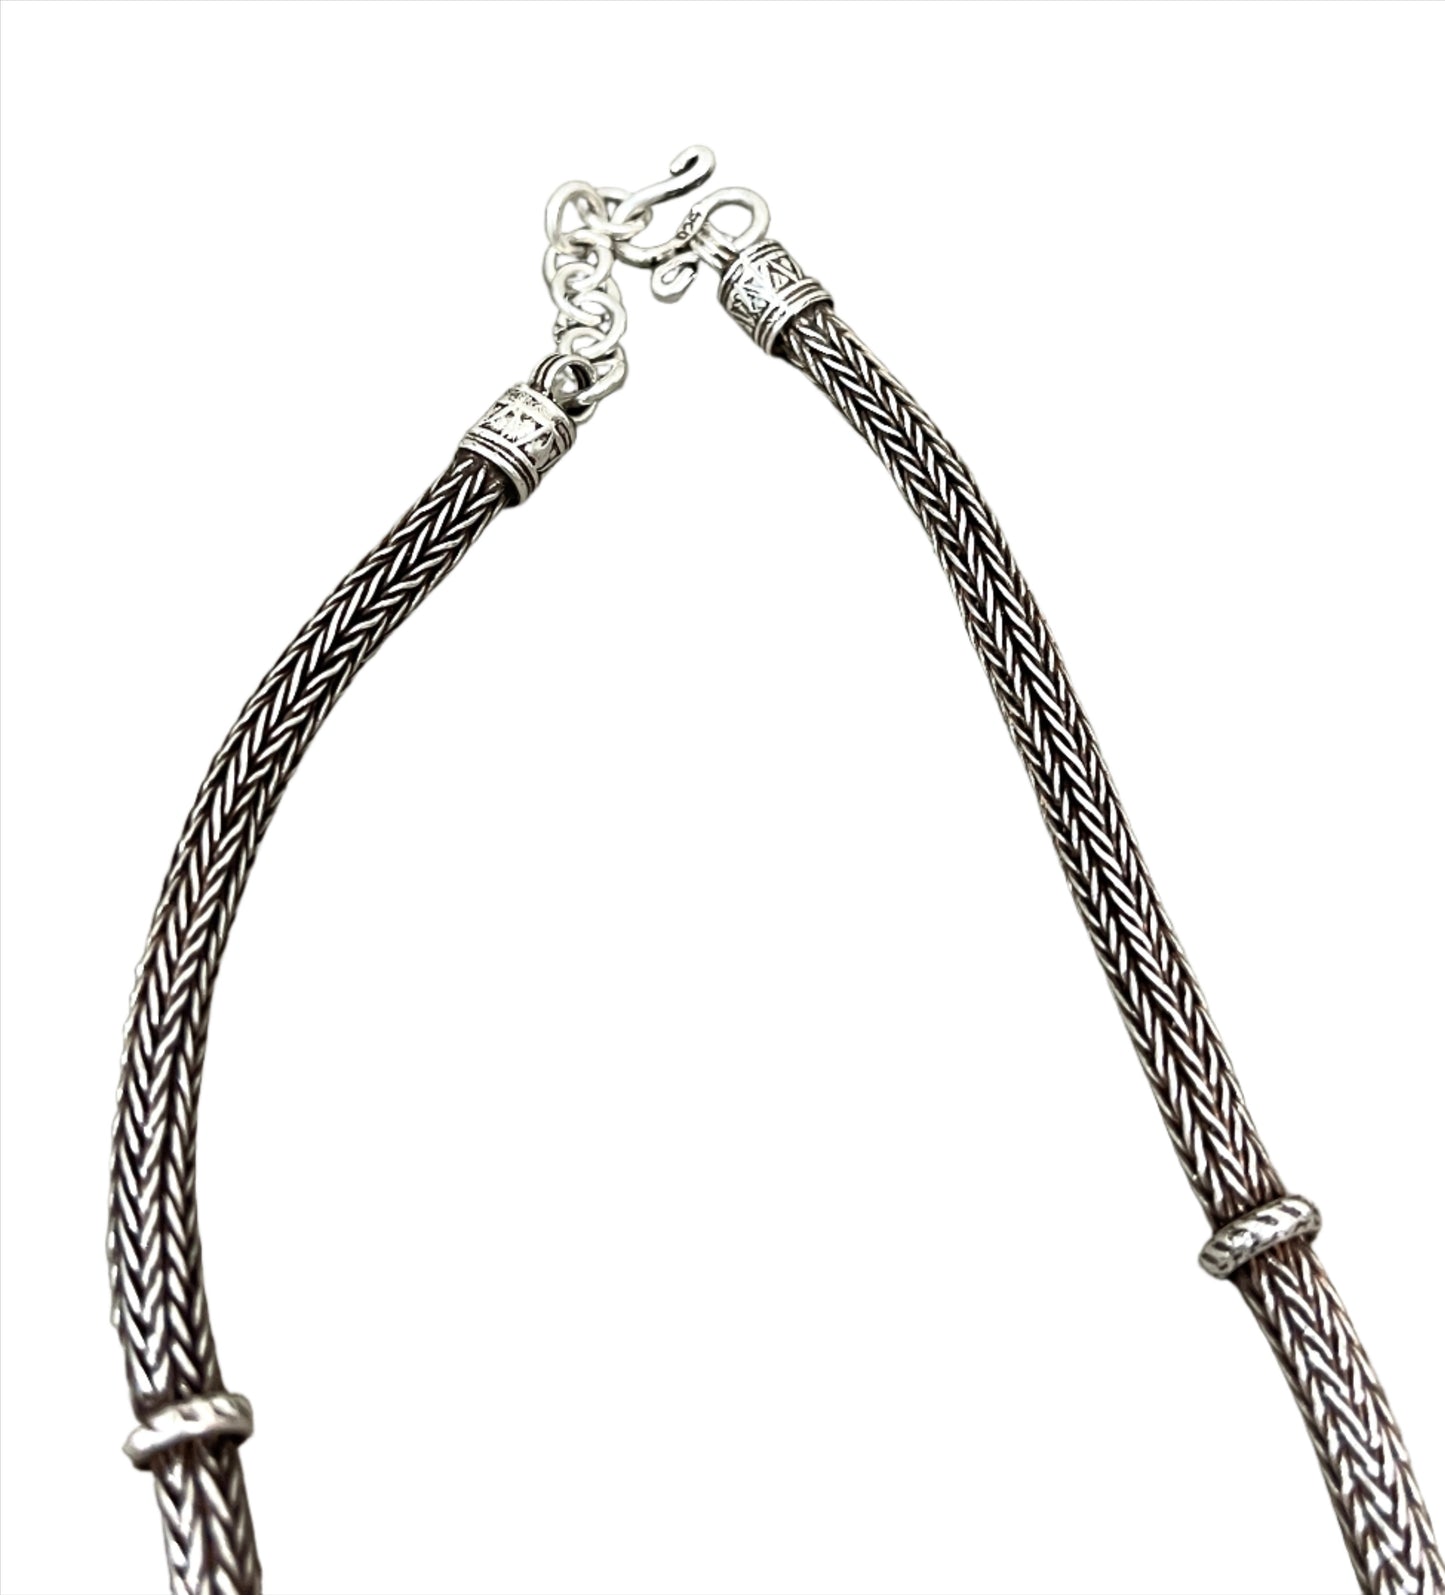 Thai Oxidized Necklaces - 18"